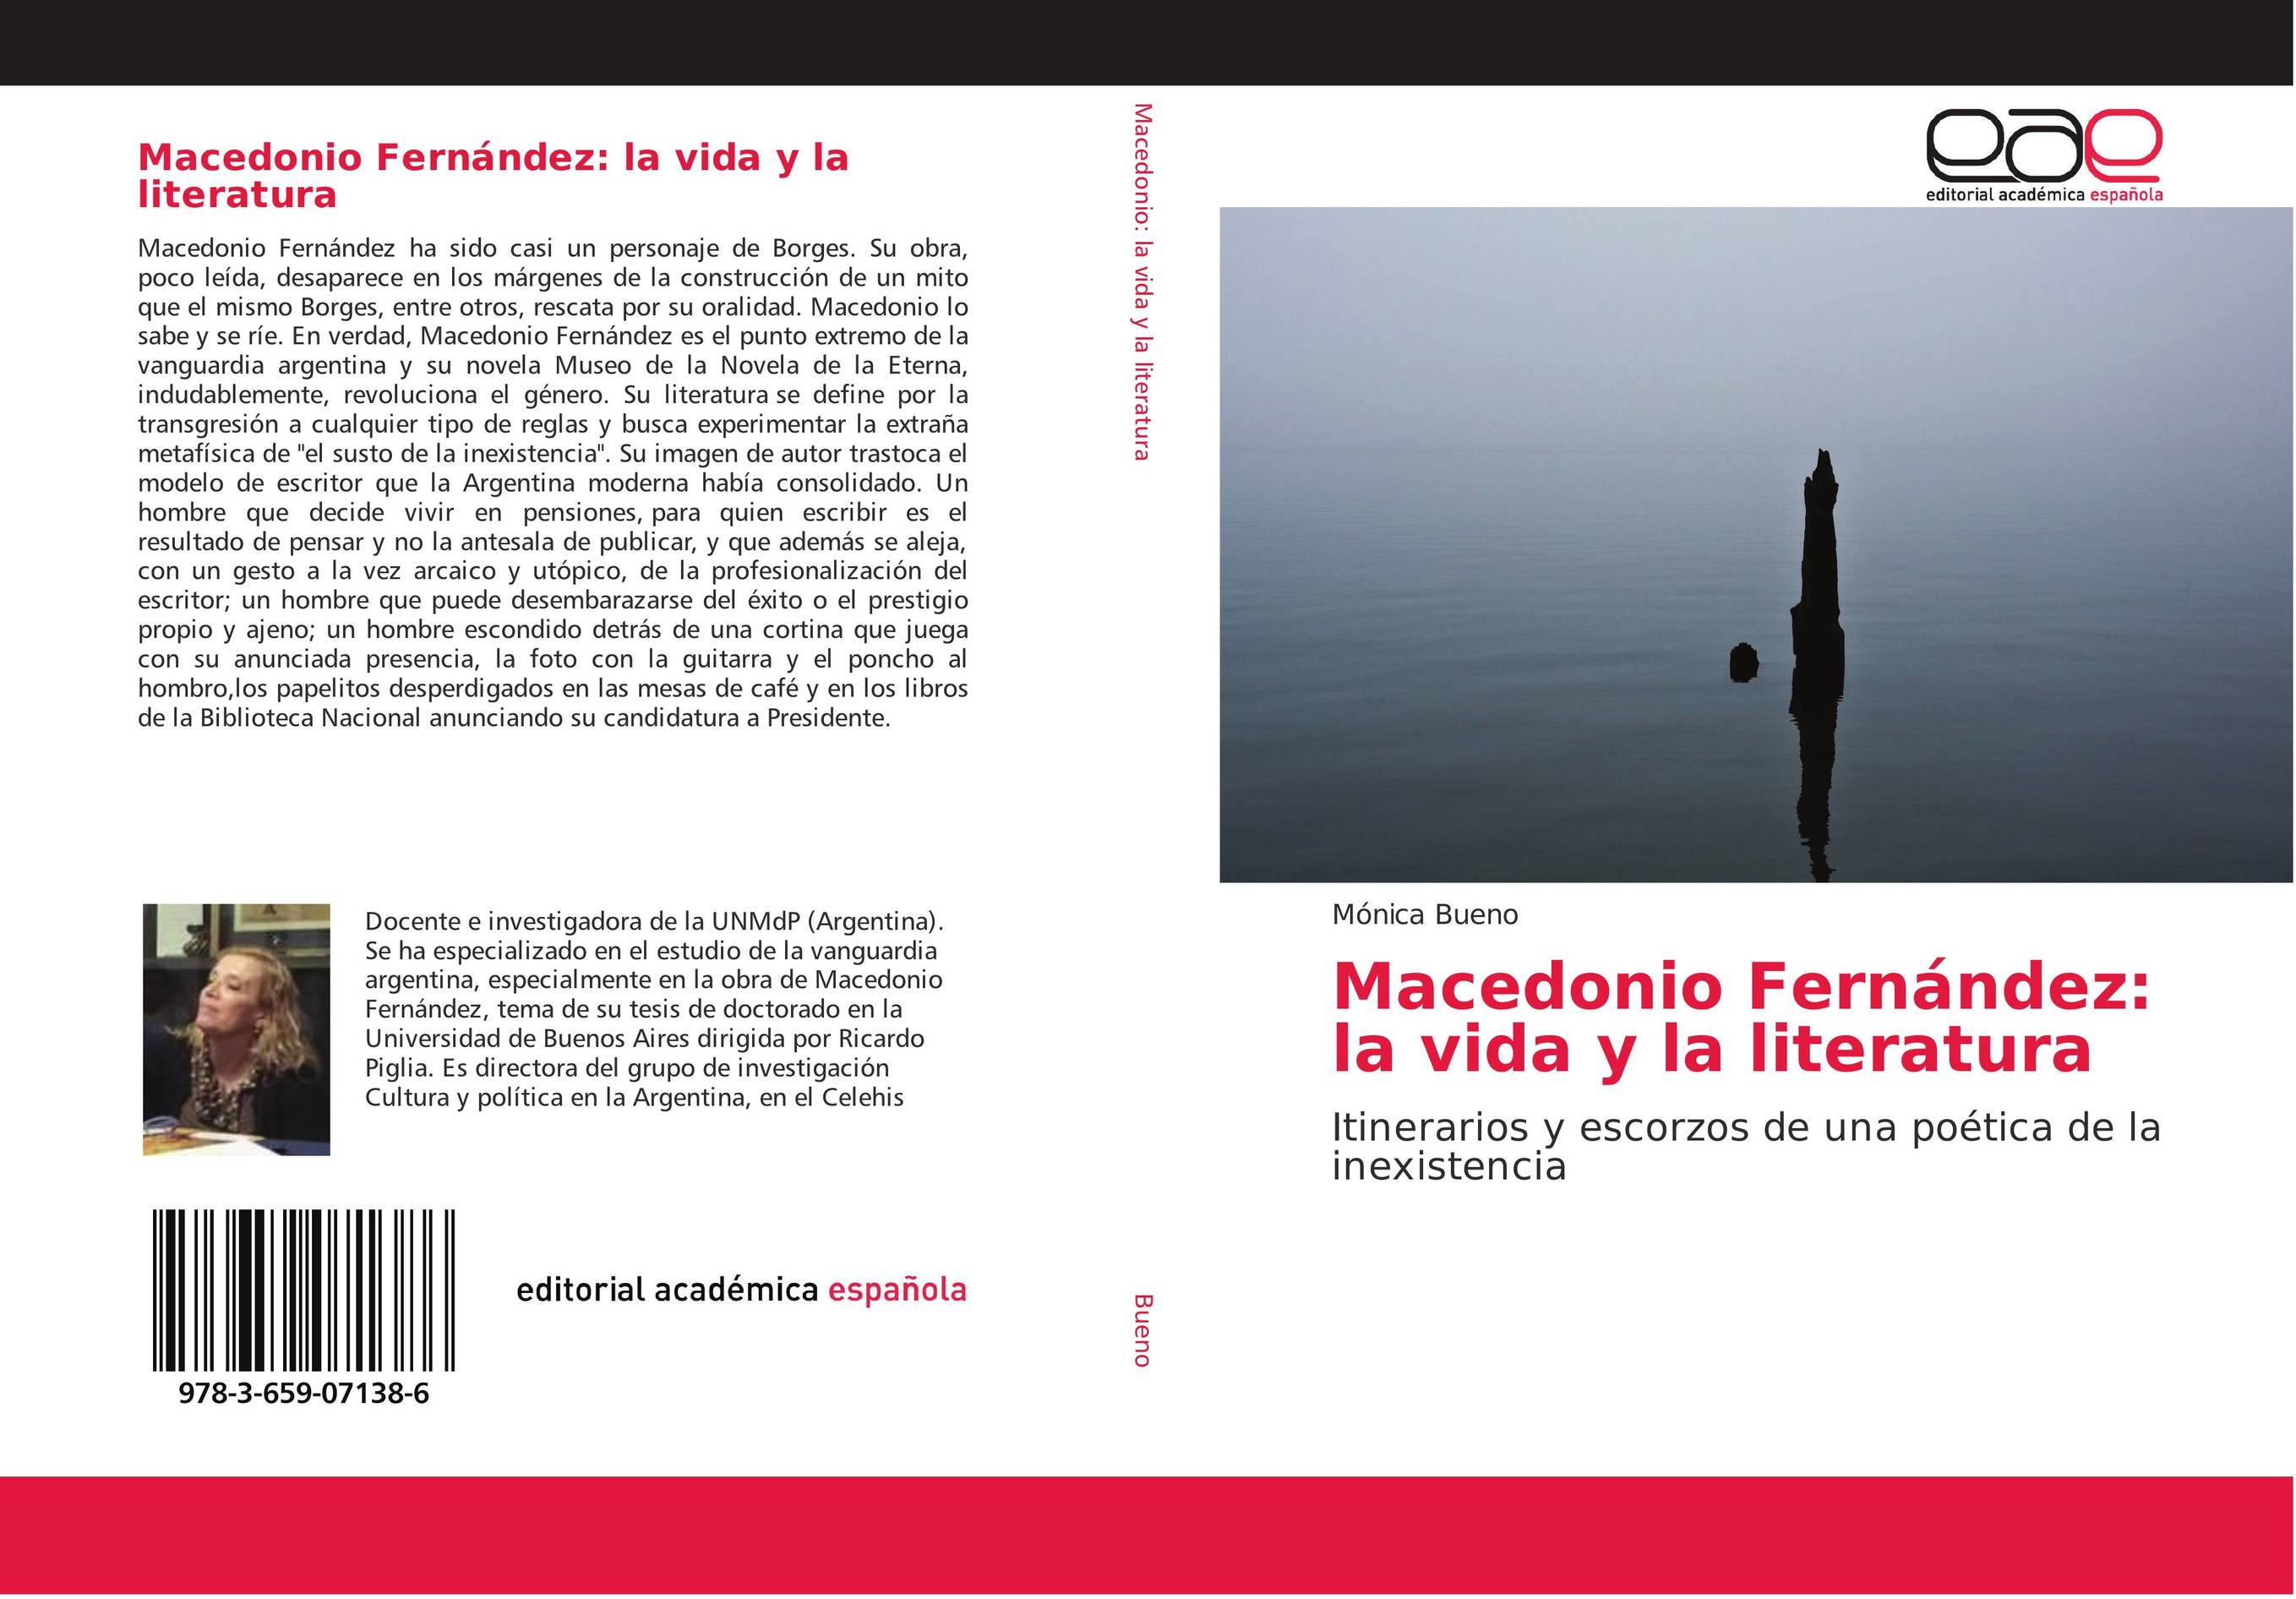 Macedonio Fernández: la vida y la literatura